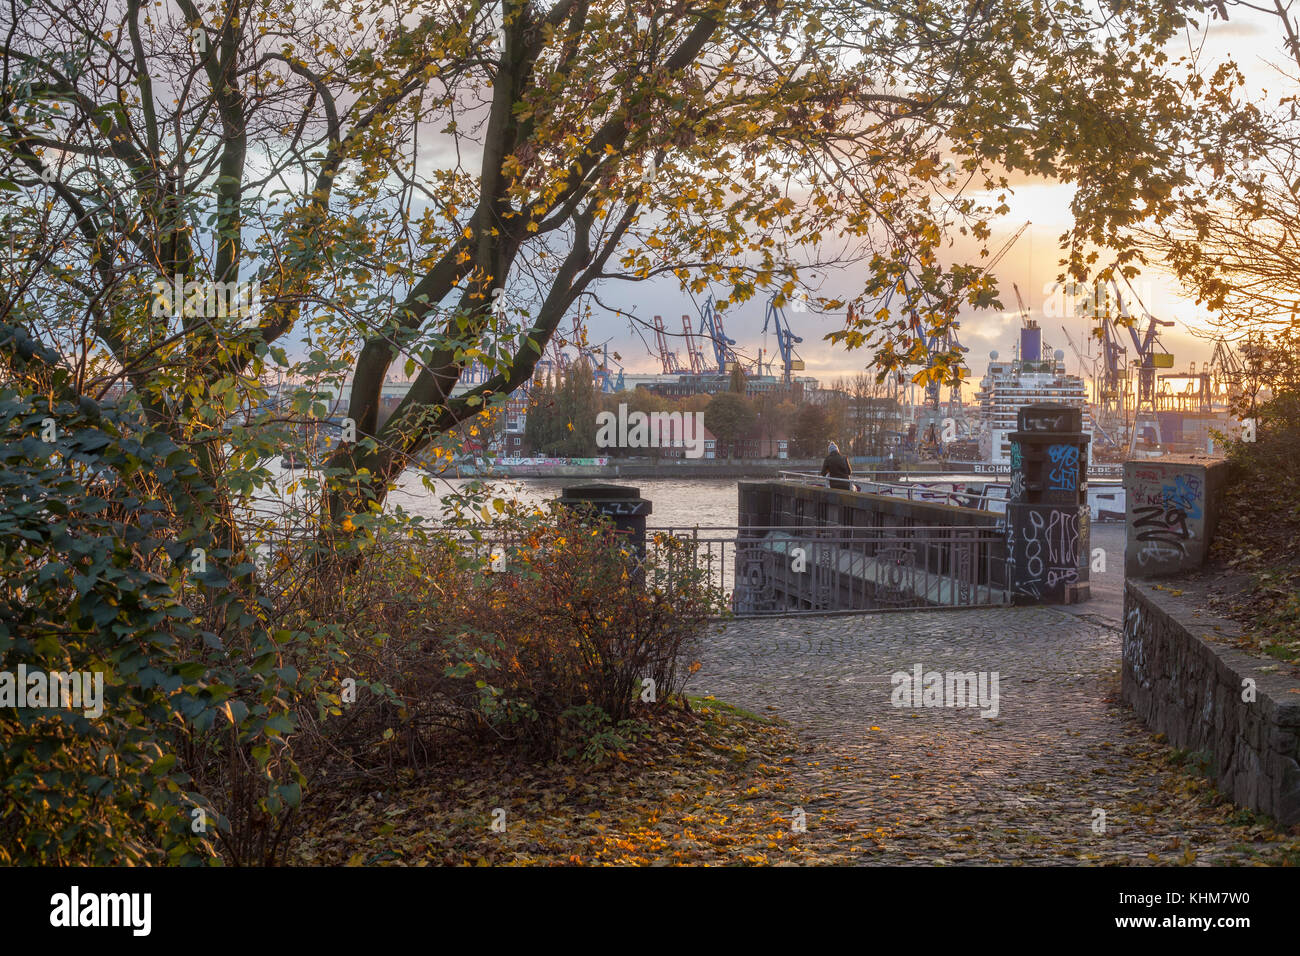 Sankt-Pauli-Landing Bridges and Harbor in Autumn at Evening, Hamburg, Germany, Europe I  Herbststimmung bei den St.-Pauli-Landungsbrücken bei Sonnenun Stock Photo